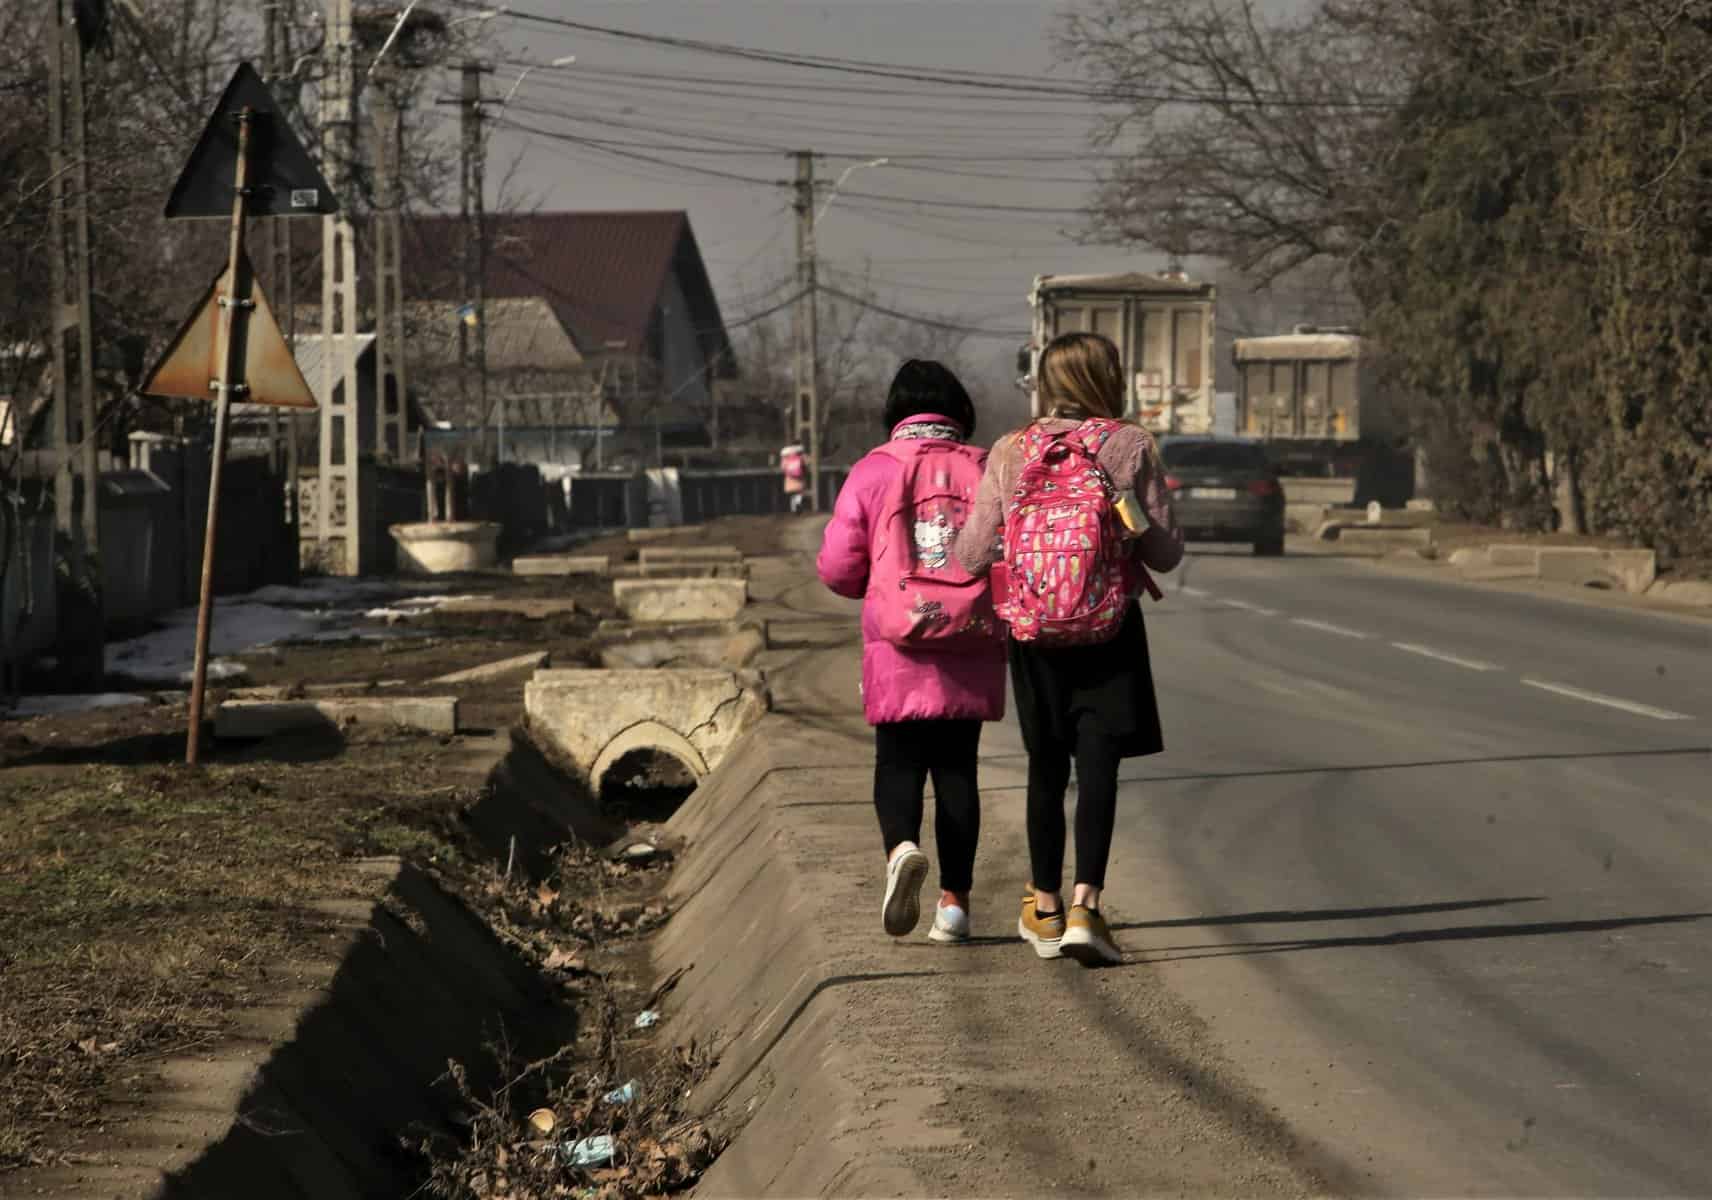 localitatea celebră în românia unde copiii sunt puși să meargă